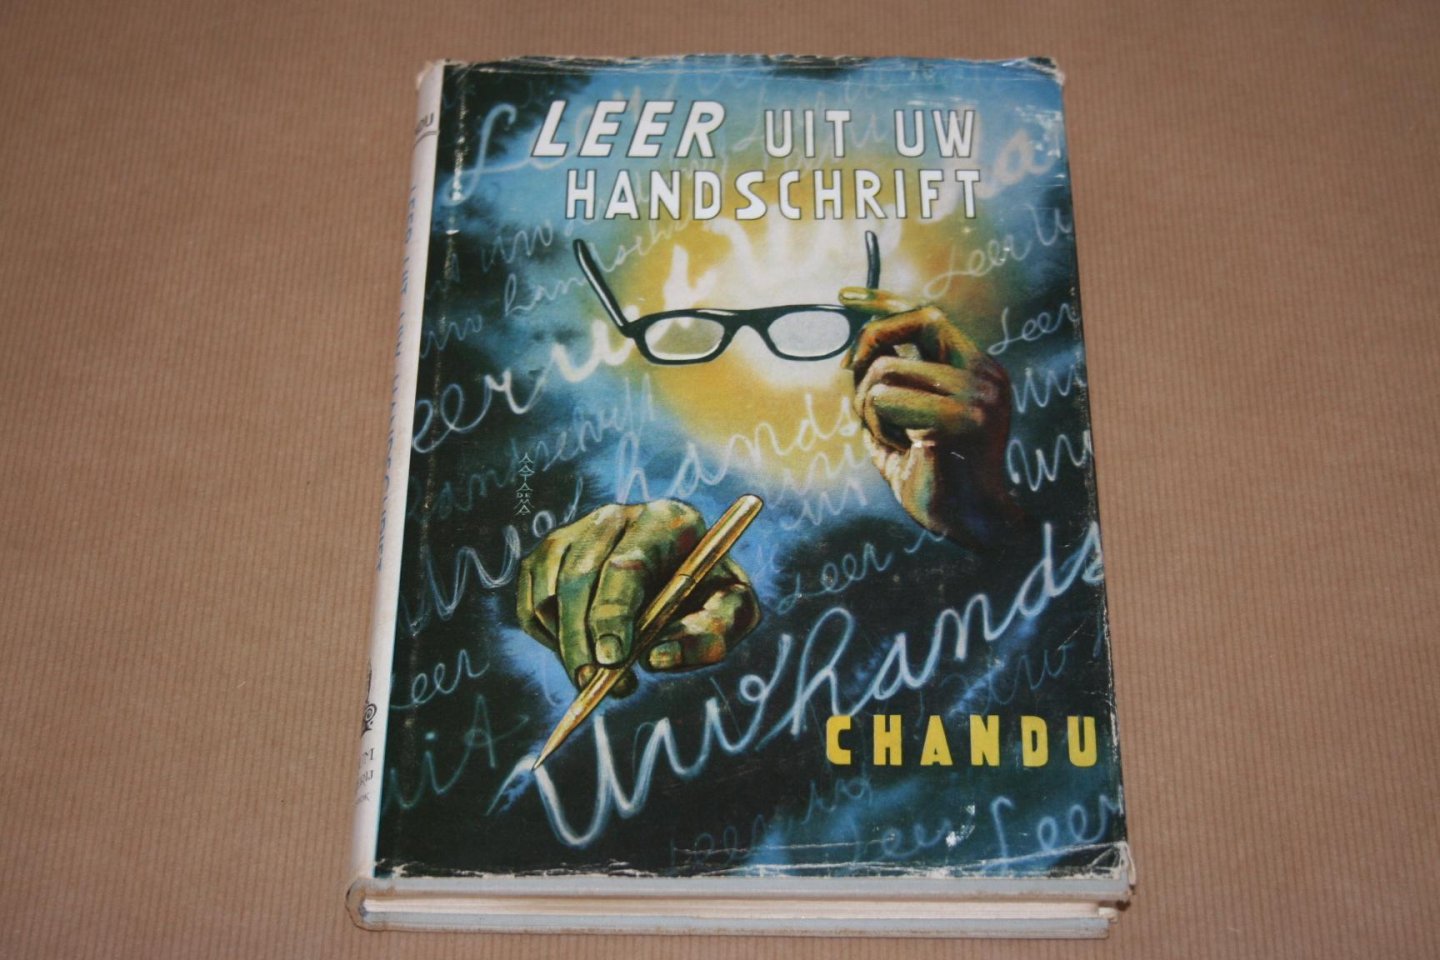 Chandu - Leer uit uw handschrift -- Praktische grafologie voor iedereen